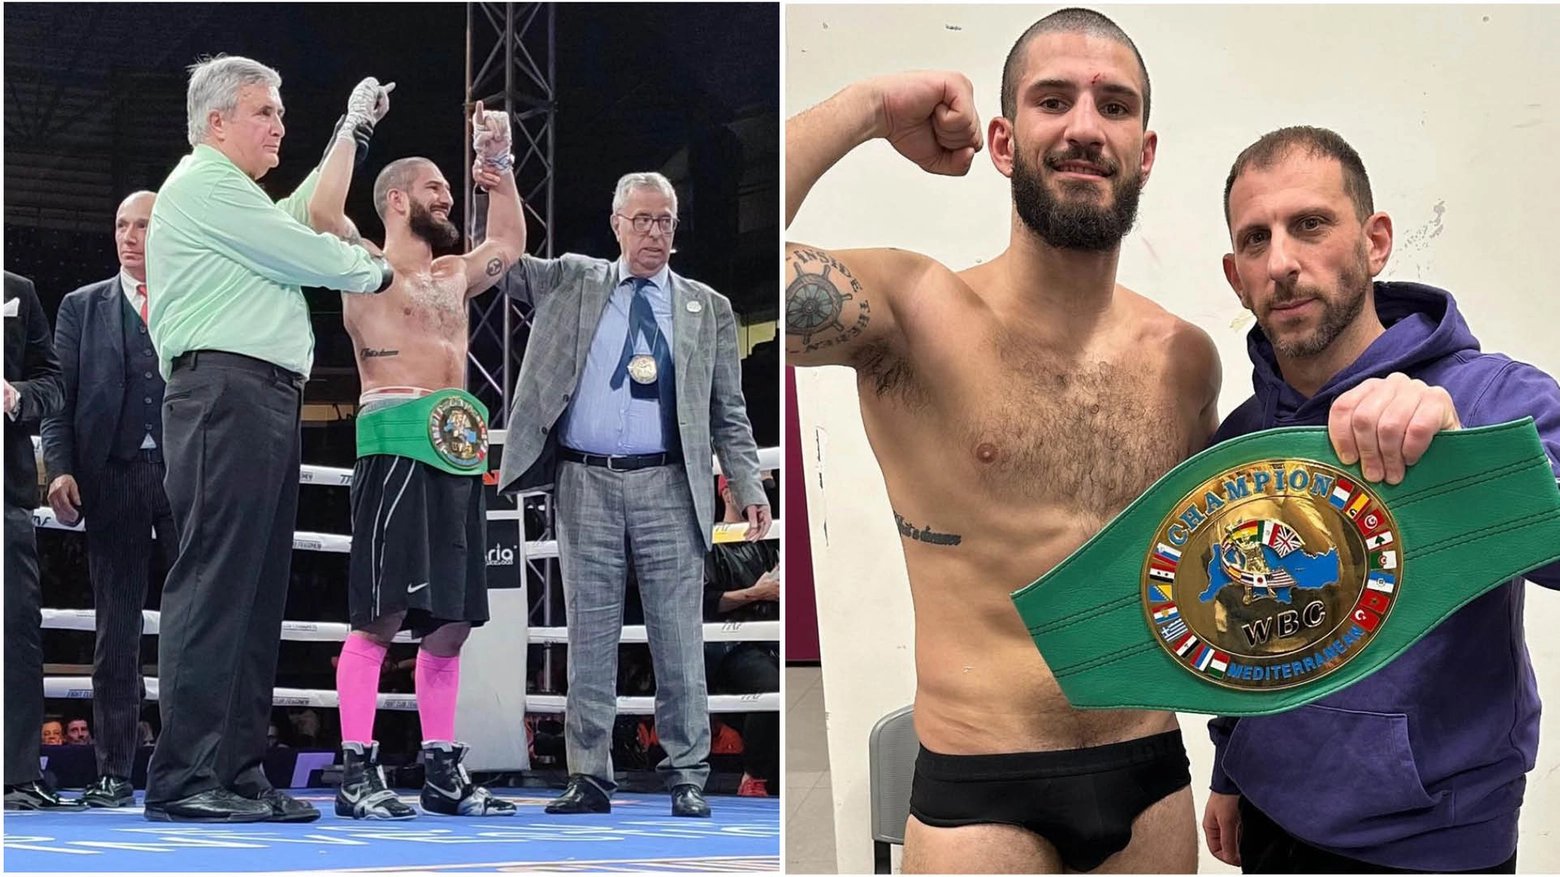 Dario "Spartan" Morello, campione WBC Mediterraneo dei pesi medi